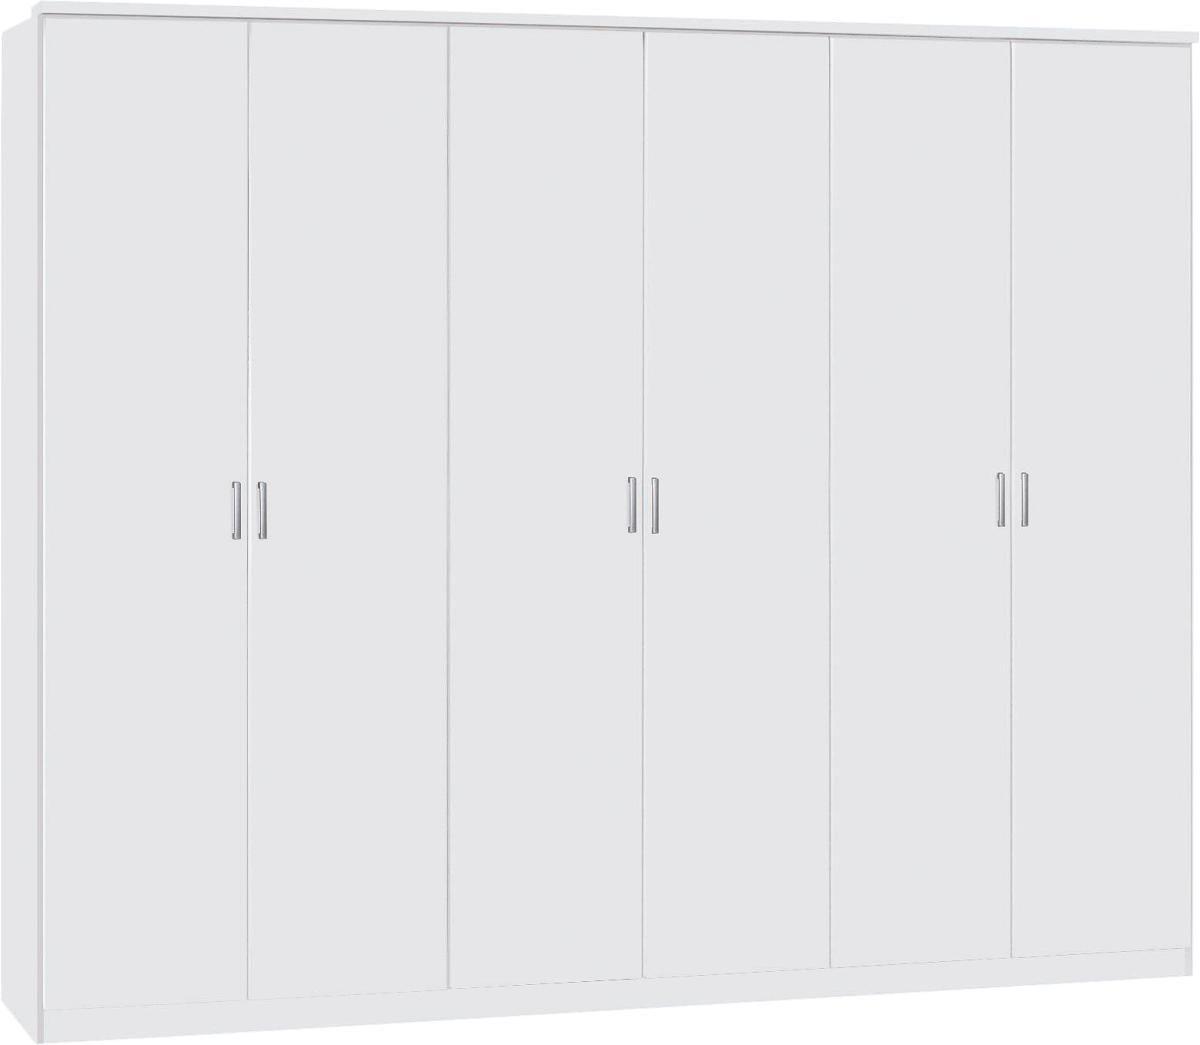 Drehtürenschrank 271cm Lemgo, Weiß Dekor - Eichefarben/Weiß, KONVENTIONELL, Holz/Holzwerkstoff (271/212/54cm)